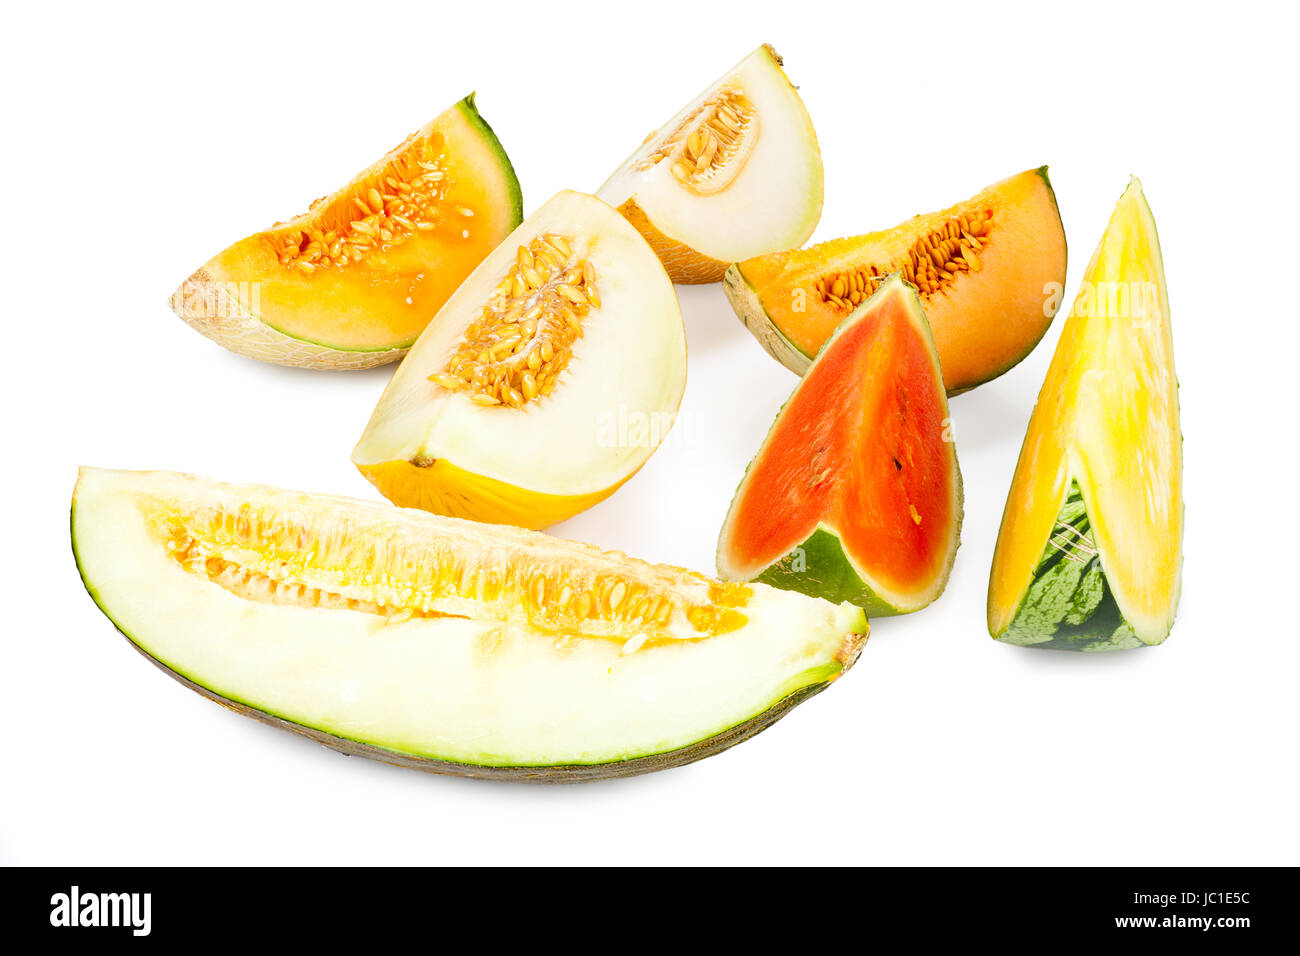 Stücke von verschiedenen Melonensorten vor weißem Hintergrund Stock Photo